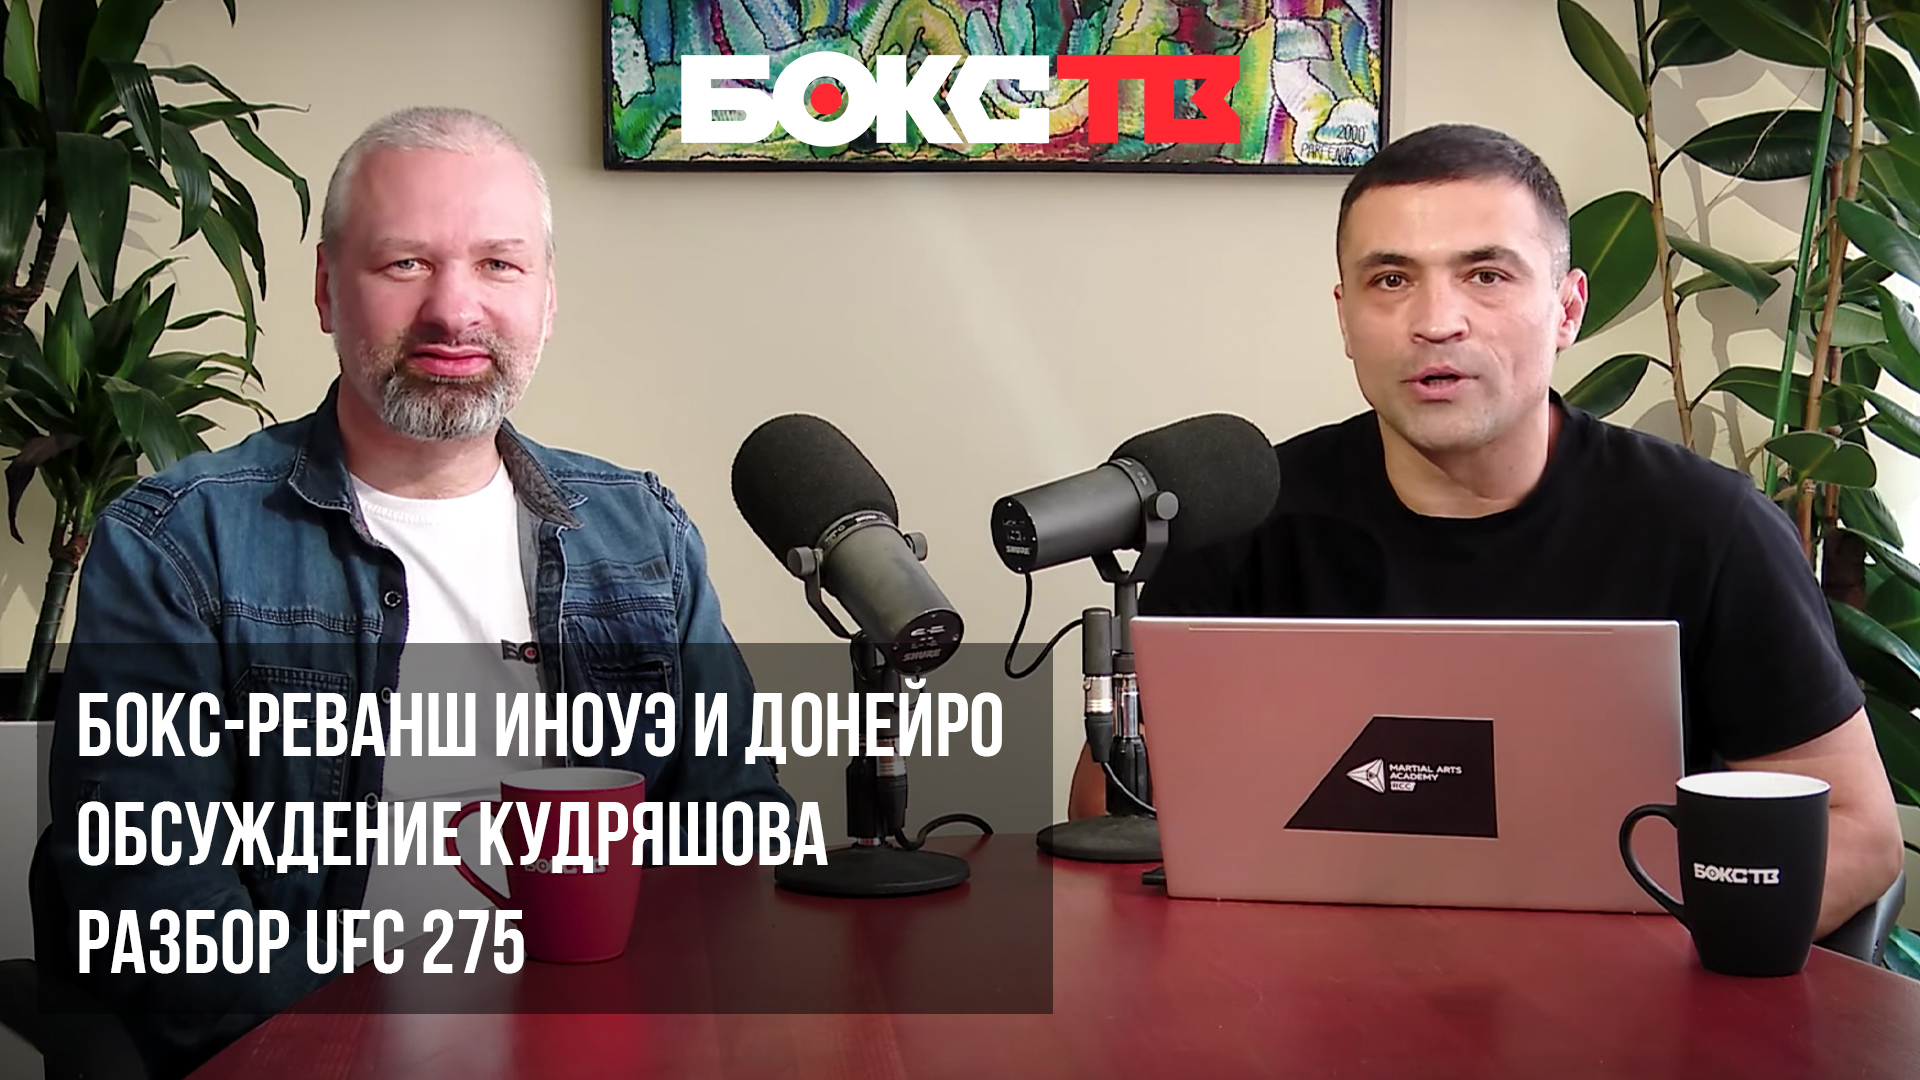 Гильотина с Уральцем и Салимовым | Бокс Кудряшова, обзор UFC 275, реванш Ионуэ